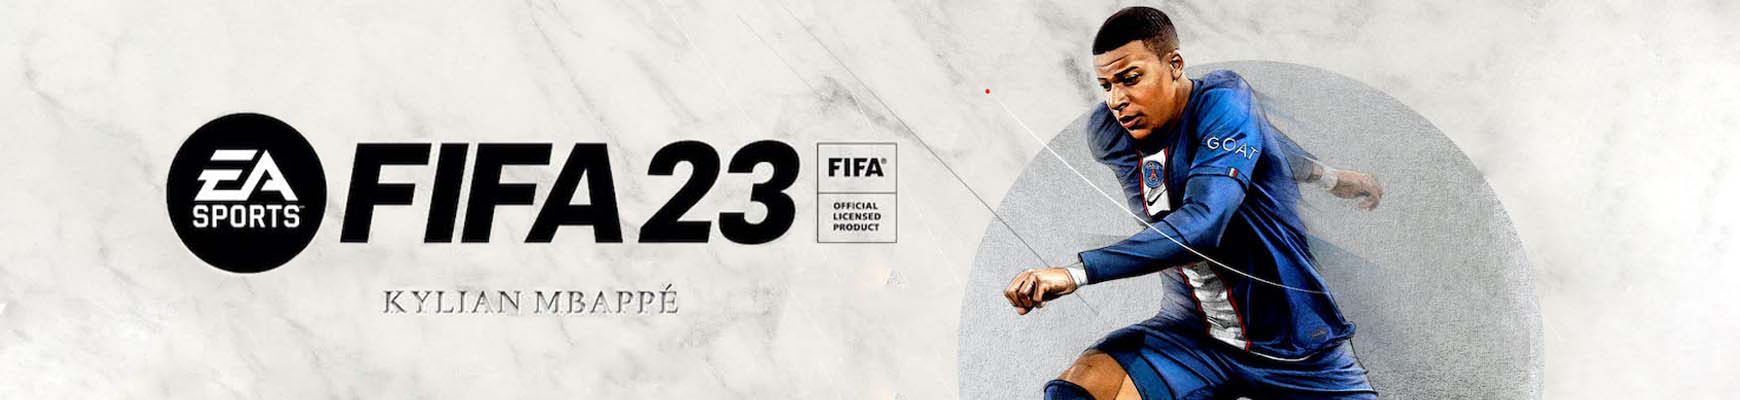 FIFA 23 CENA PRODAJA SRBIJA